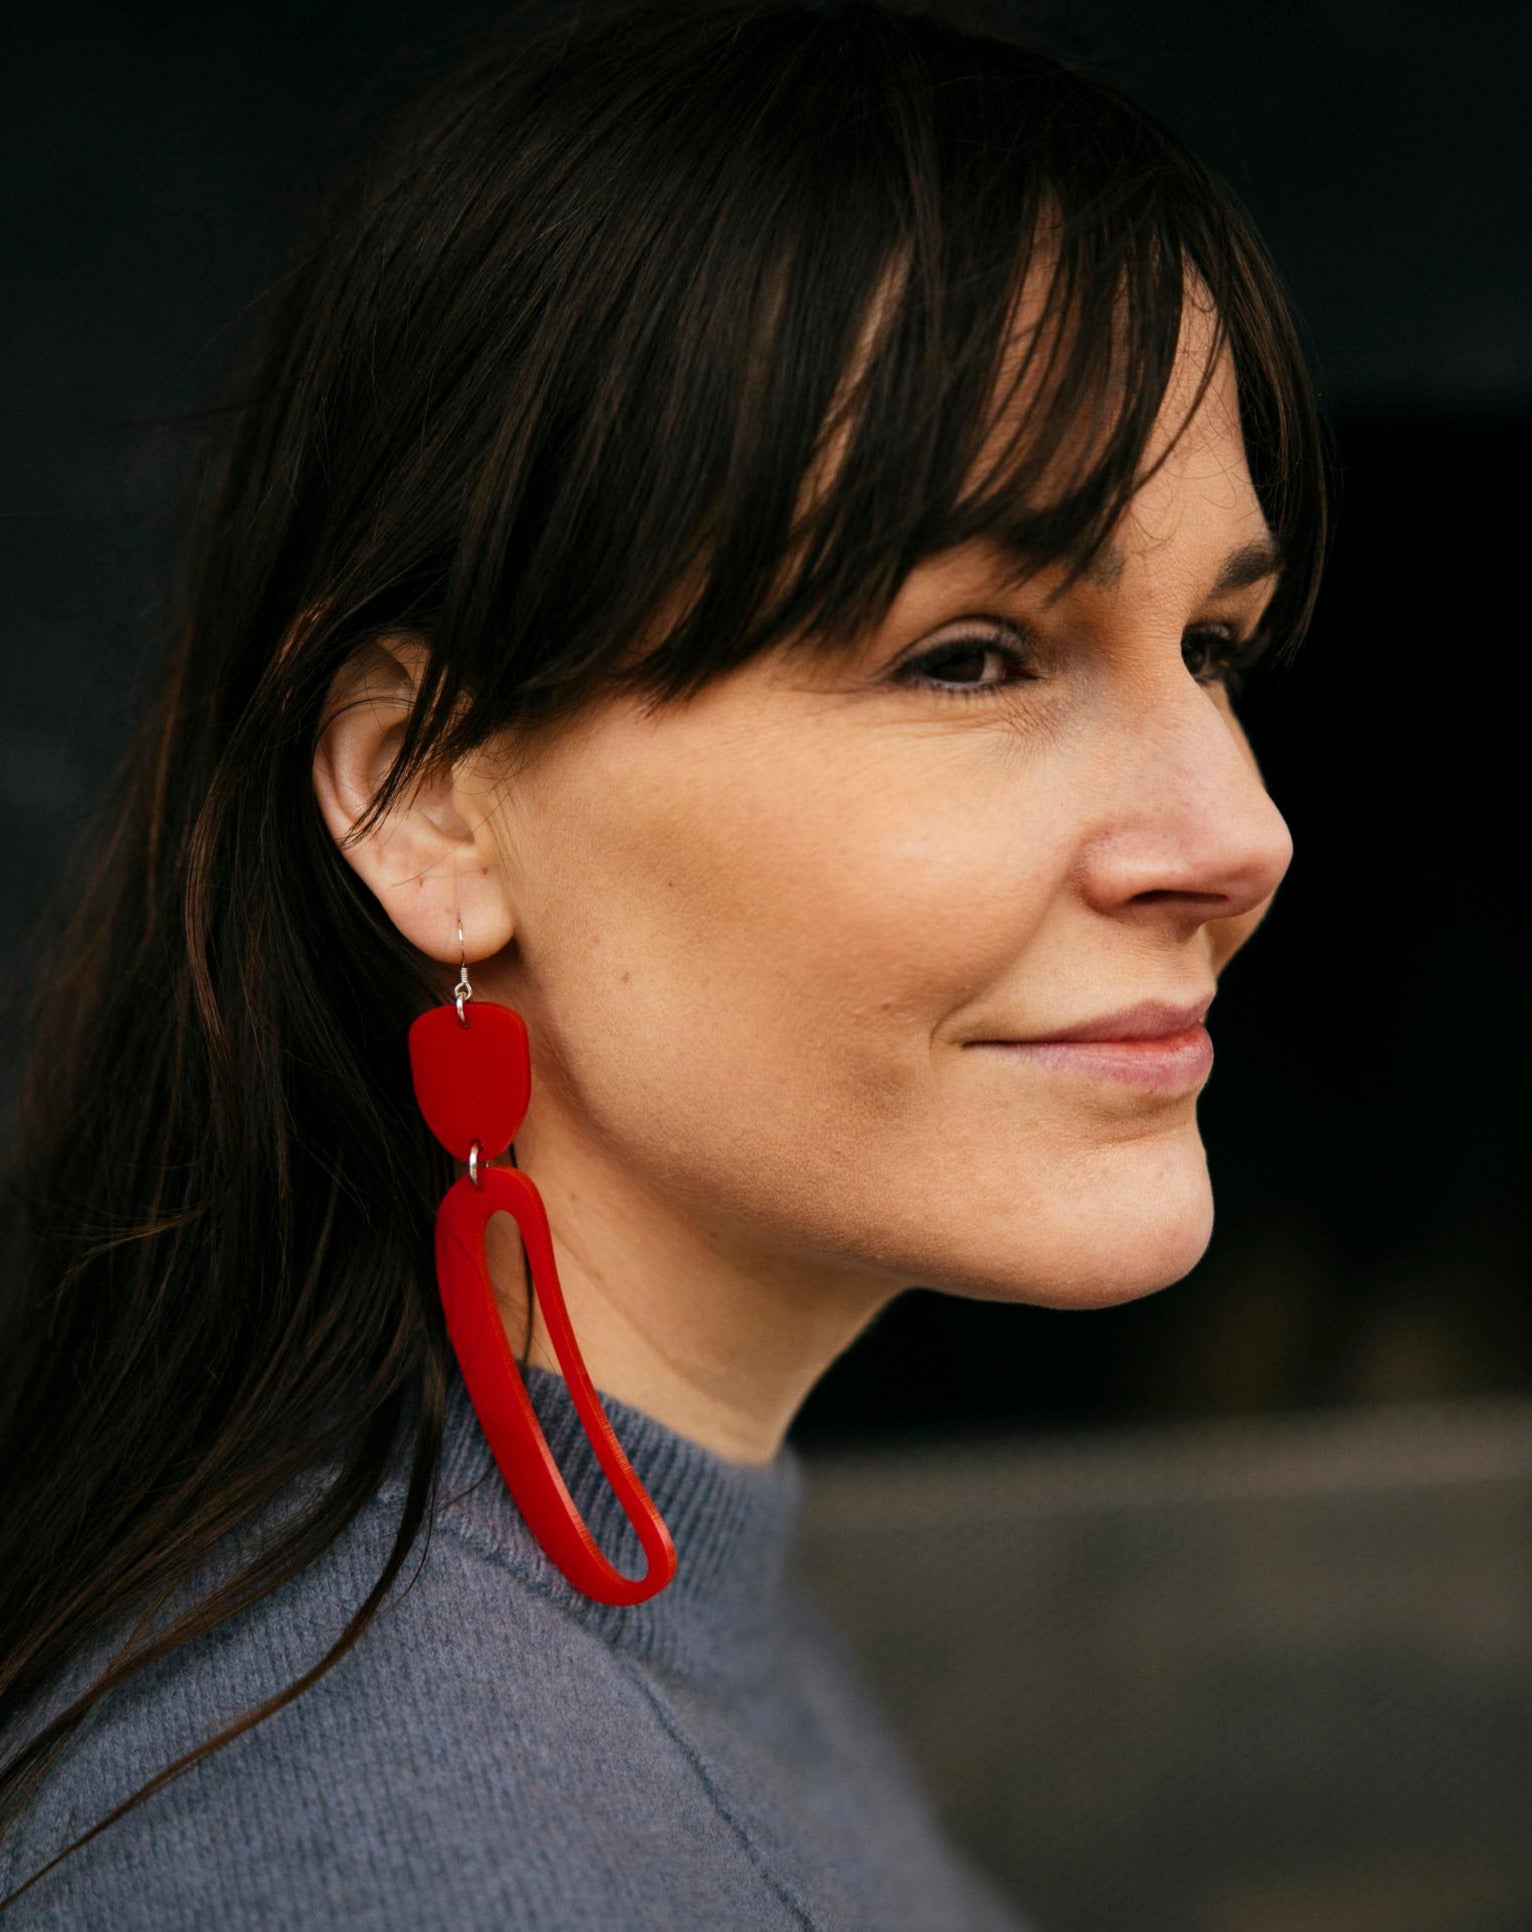 Elongated Ovoid Earrings in Red by Warren Steven Scott worn by a brunette woman